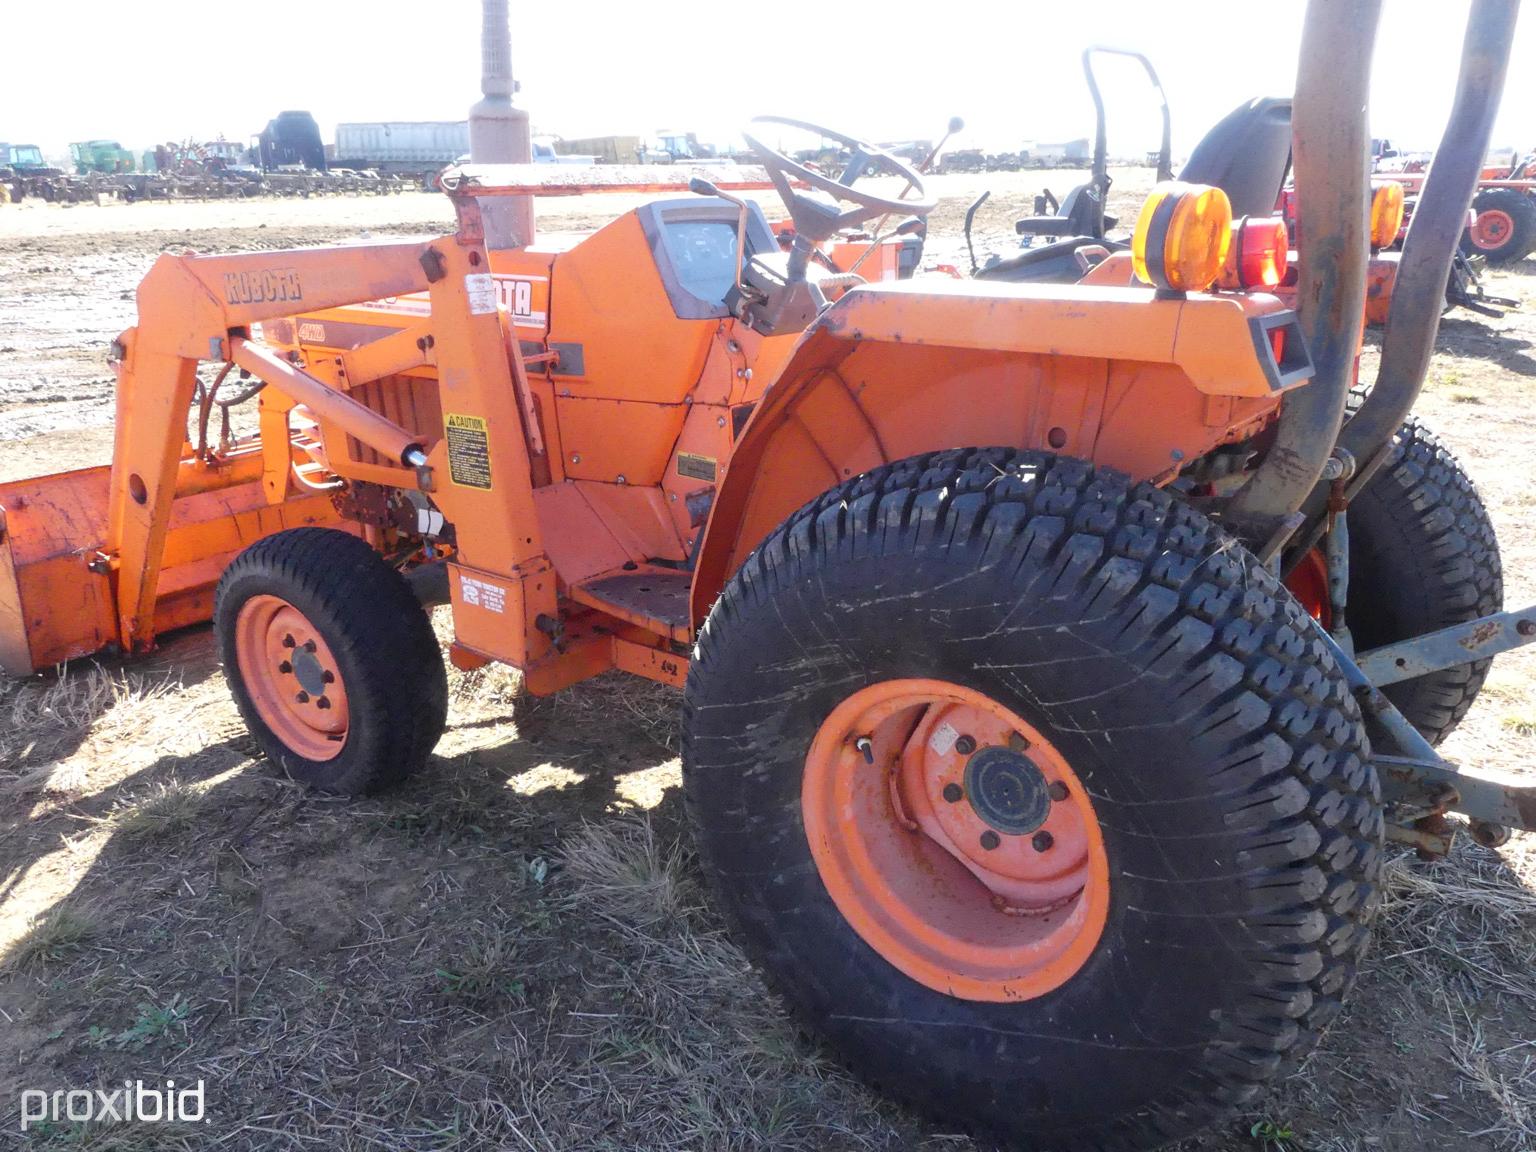 Kubota L2550 MFWD Tractor, s/n 51406: Front Loader w/ Bkt., 1149 hrs